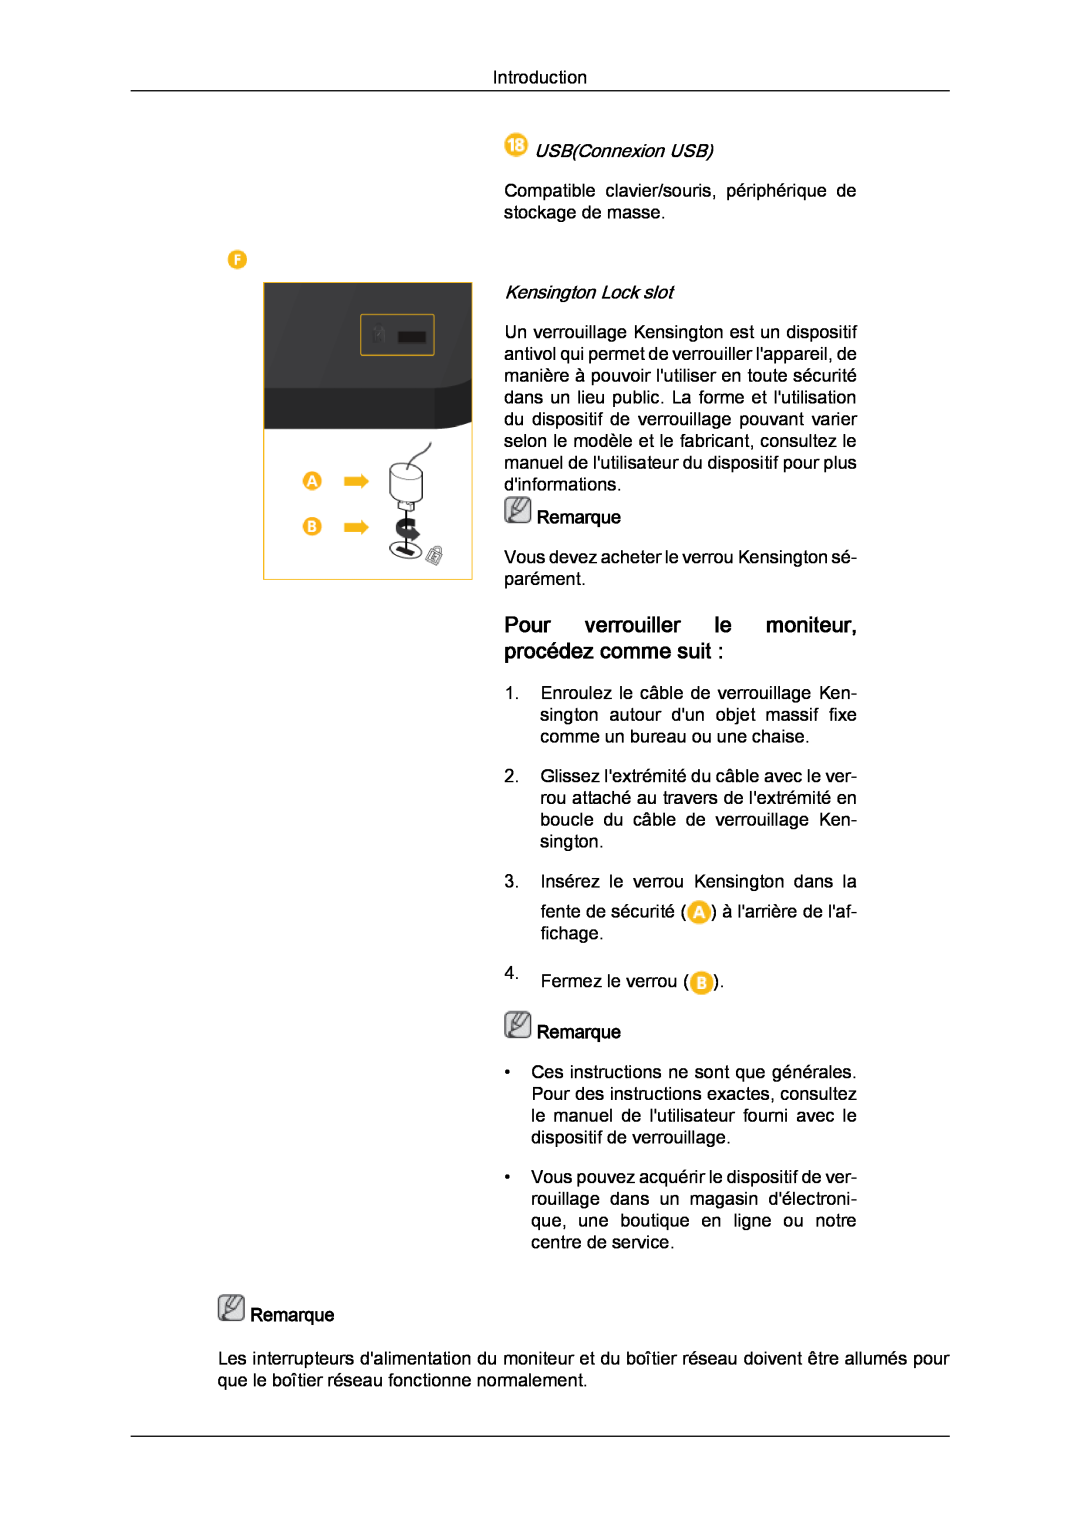 Samsung LH32CRSMBD/EN Pour verrouiller le moniteur, procédez comme suit, USBConnexion USB, Kensington Lock slot, Remarque 